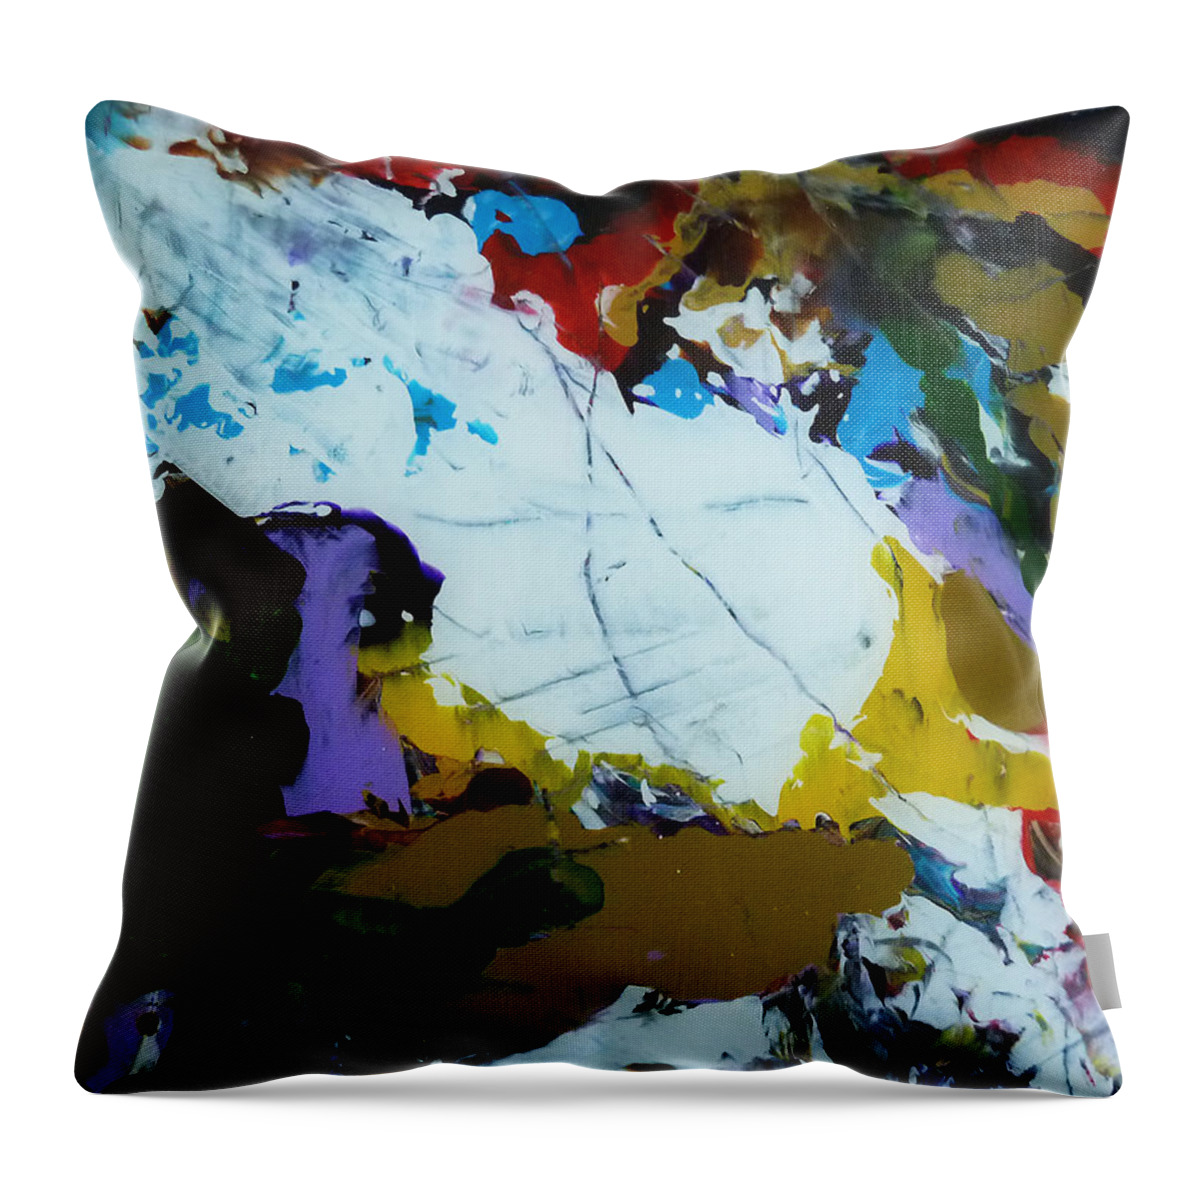 Derek Kaplan Art Throw Pillow featuring the painting Dali's Hungry Cloud by Derek Kaplan